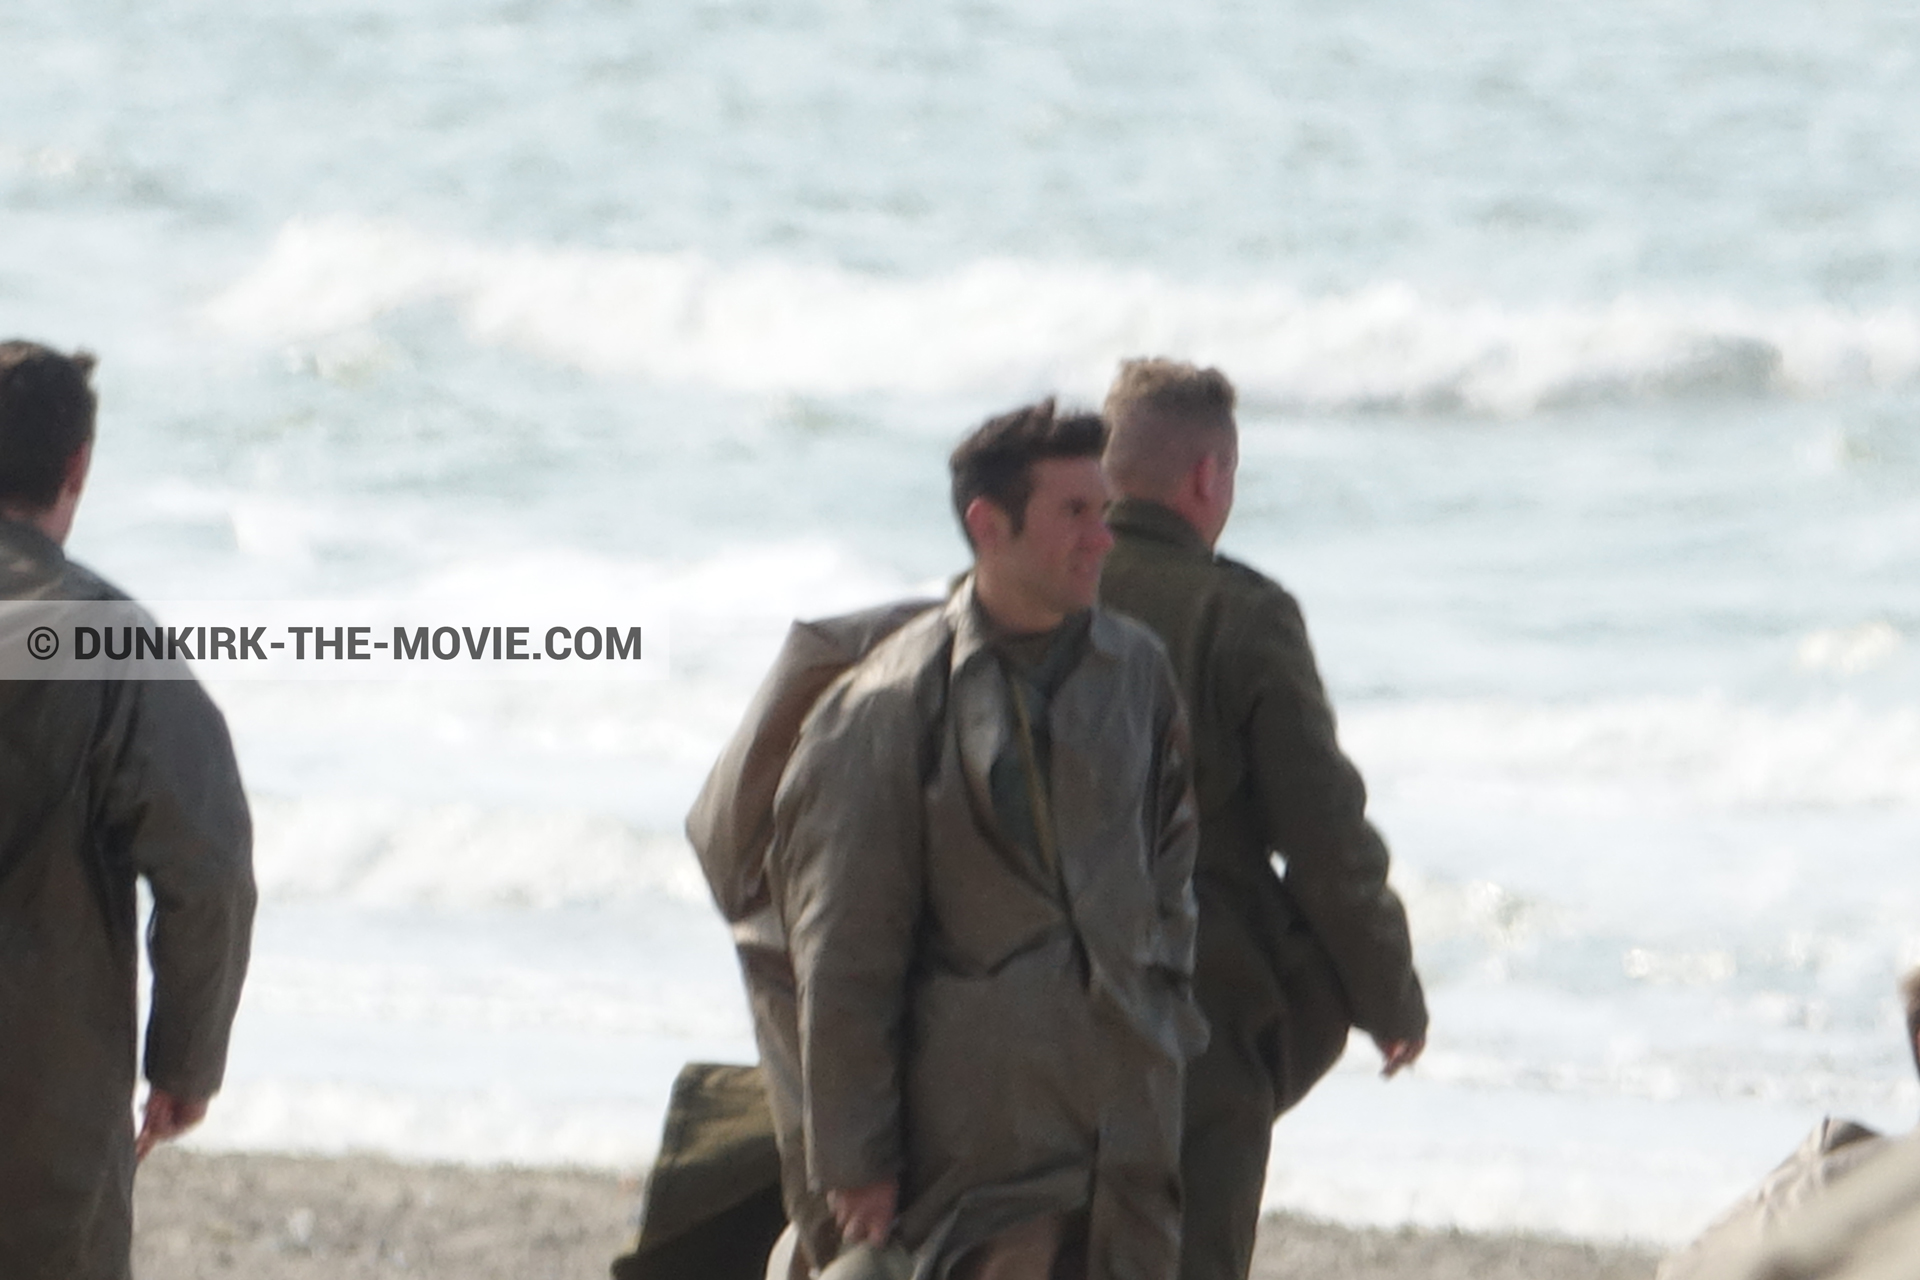 Photo avec figurants, mer agitée, plage,  des dessous du Film Dunkerque de Nolan